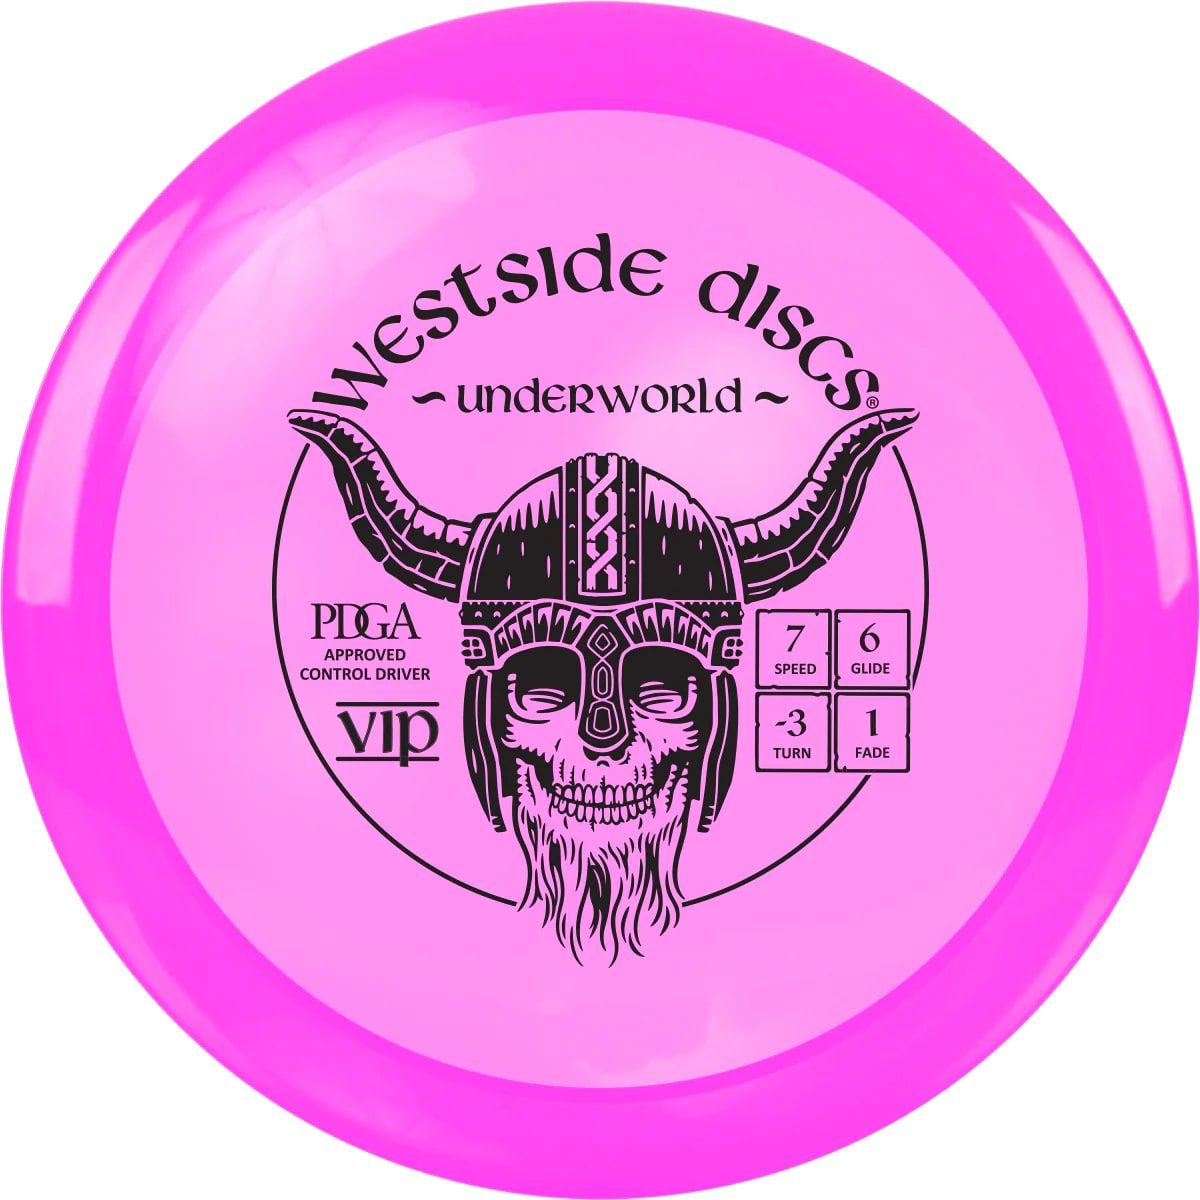 Westside Discs Vip Driver Underworld, 173g+ Pink